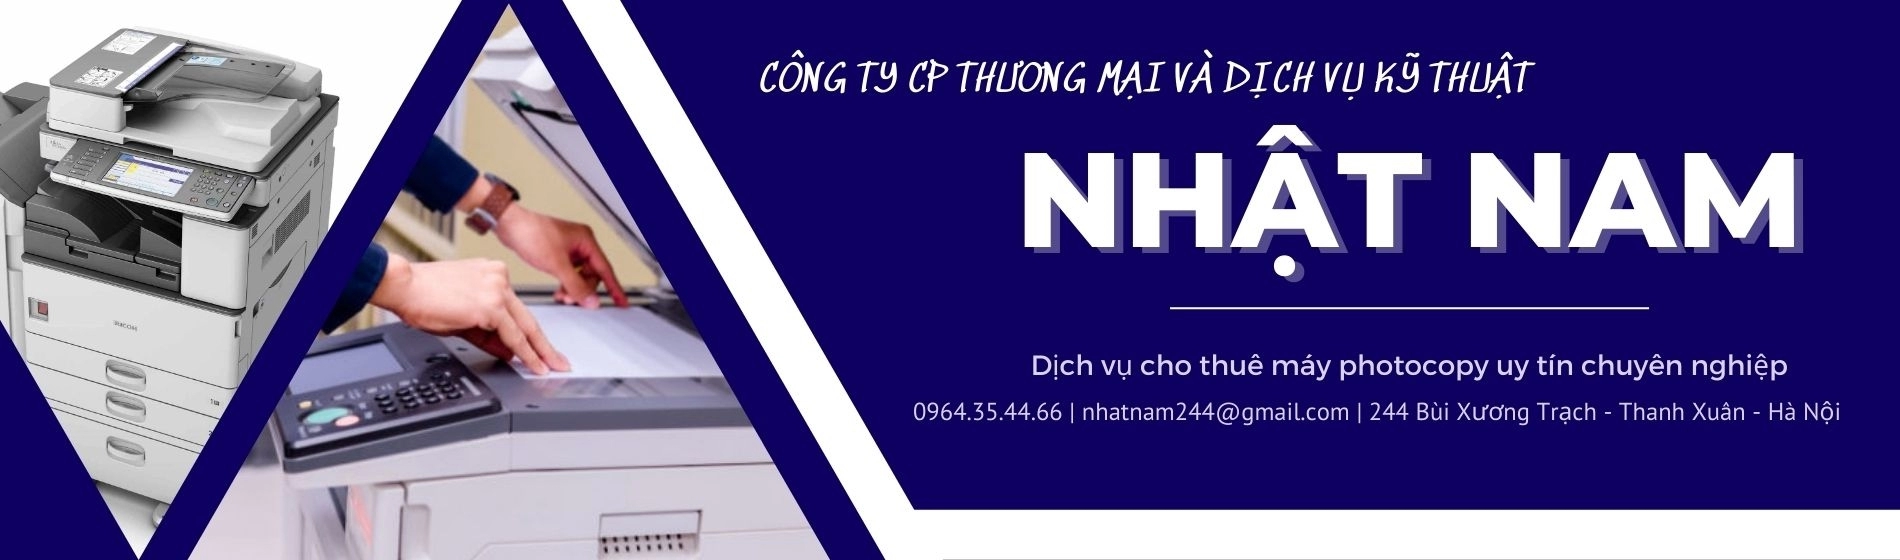 Cho thuê máy photocopy ở Hà Nội